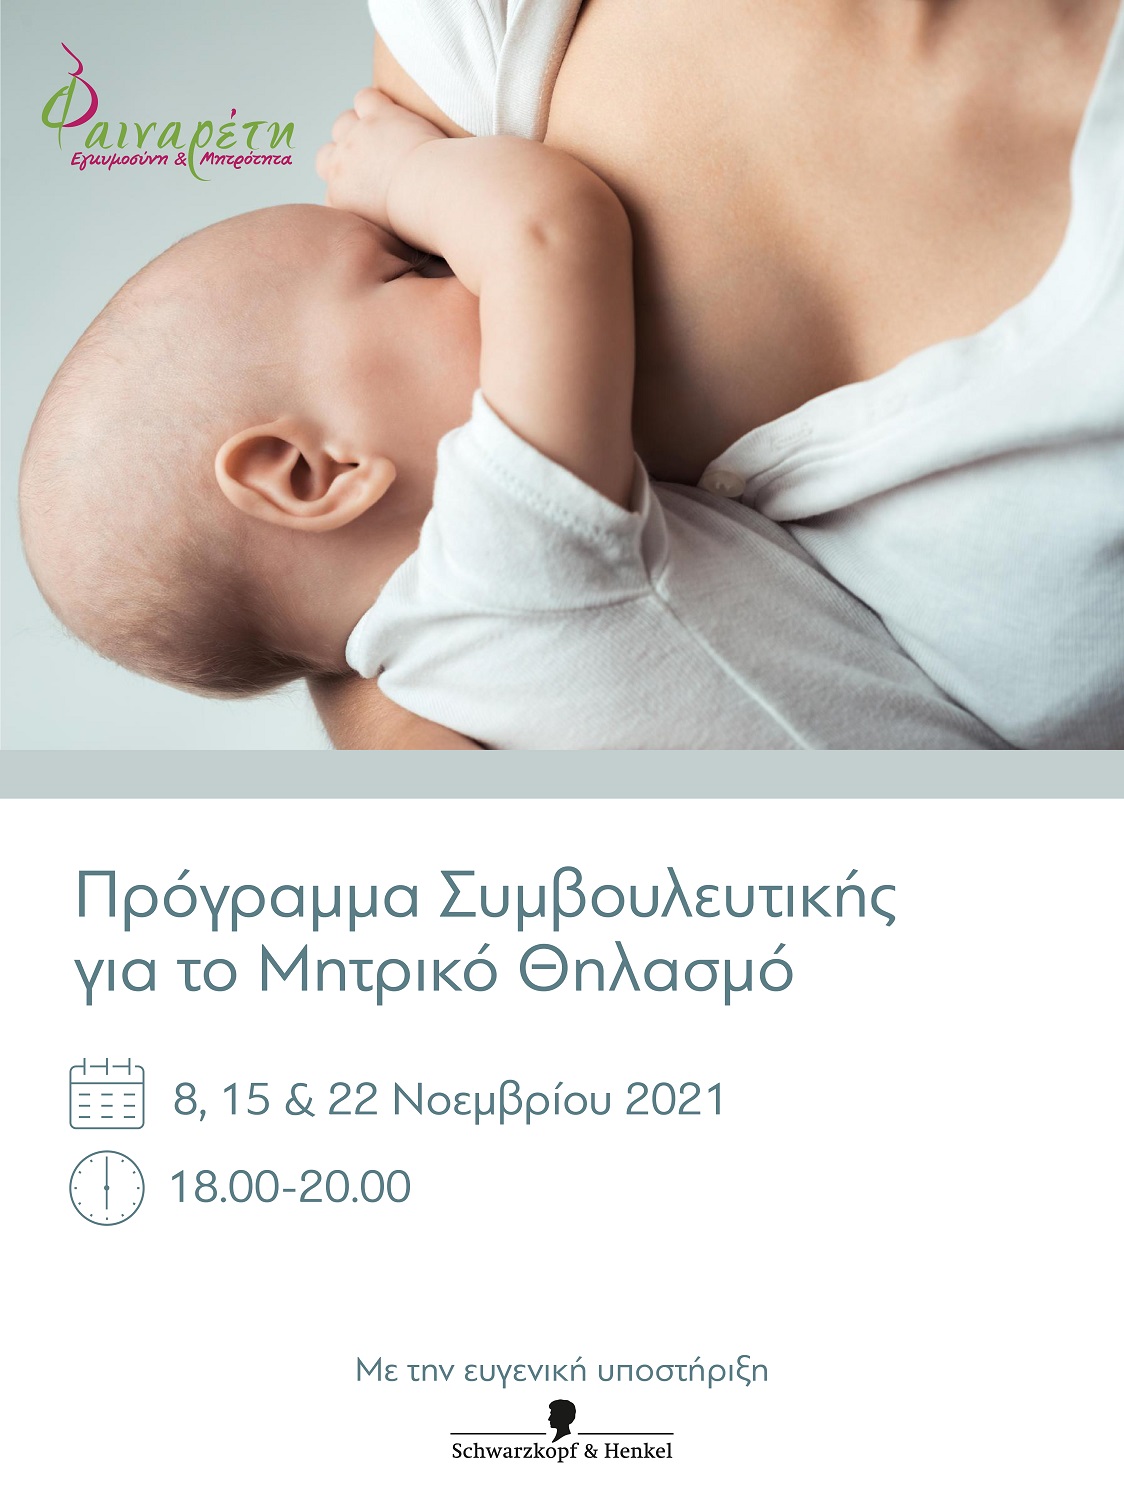 Φαιναρέτη | 3 Webinars Συμβουλευτικής για το Μητρικό Θηλασμό με δωρεάν συμμετοχή